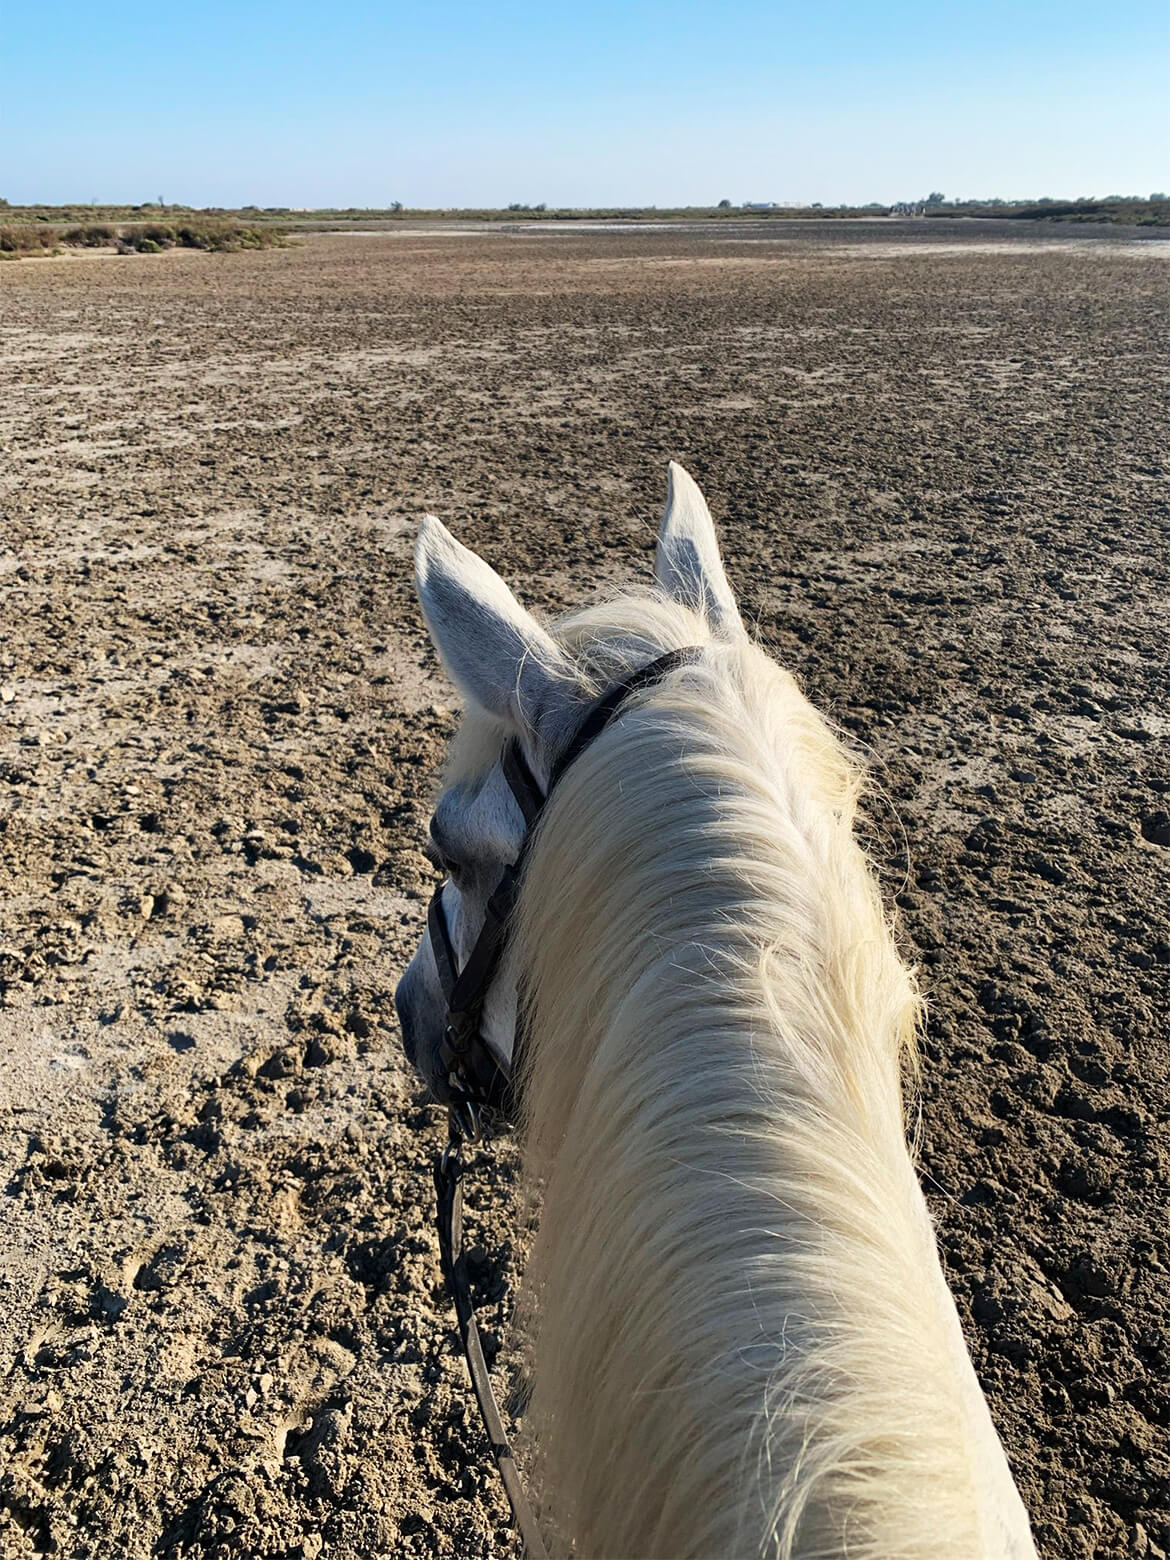 Blick vom Rücken eines Pferdes auf eine weiße Mähne